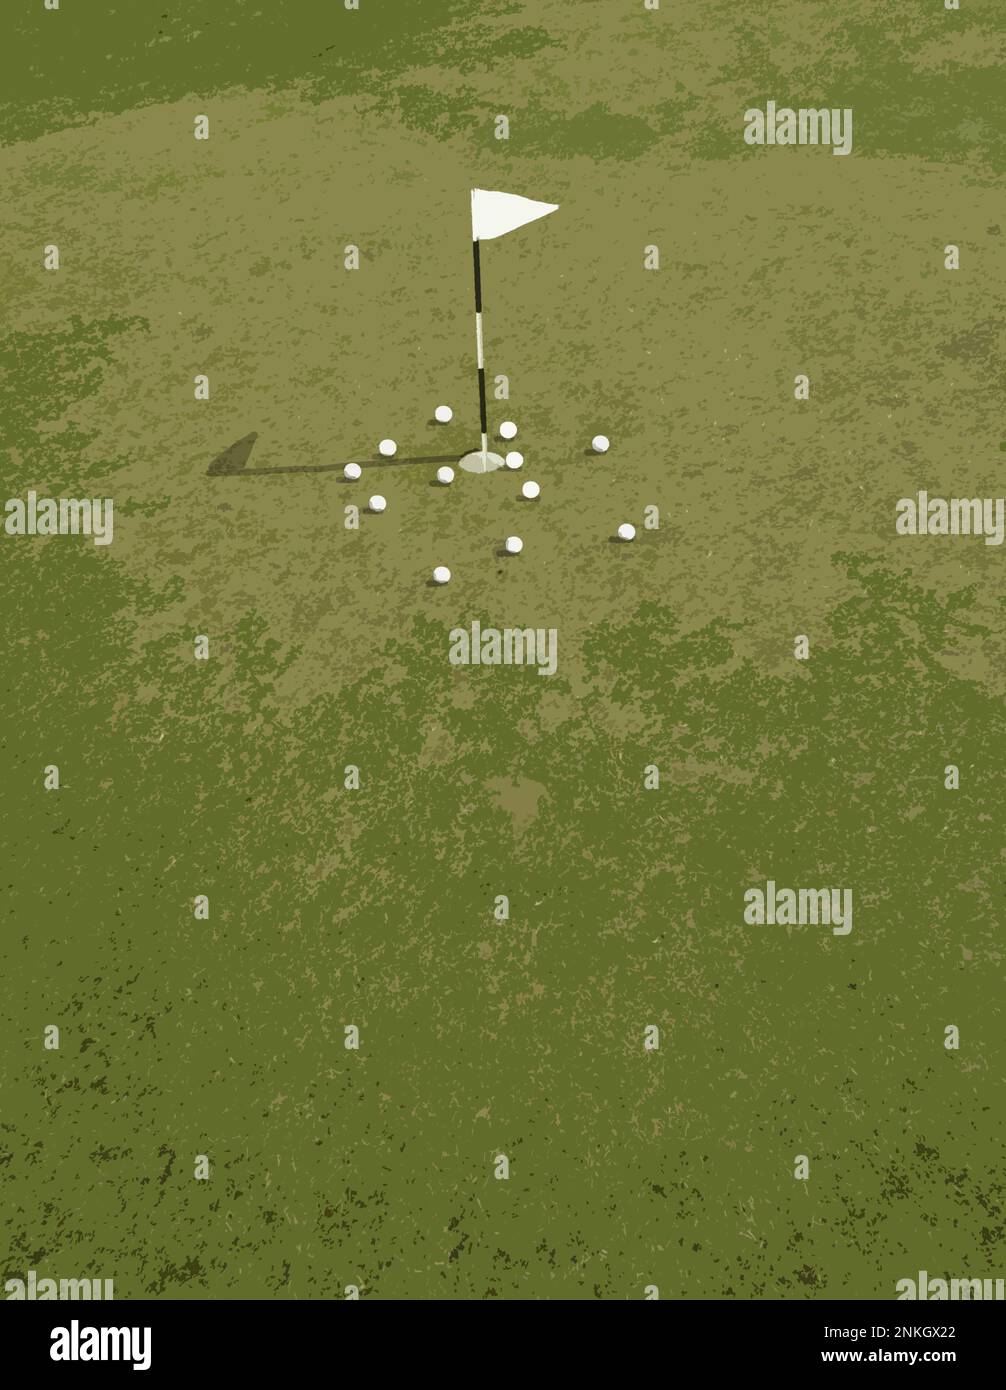 Golfflagge umgeben von Golfbällen, die Fehlschläge darstellen Stockfoto